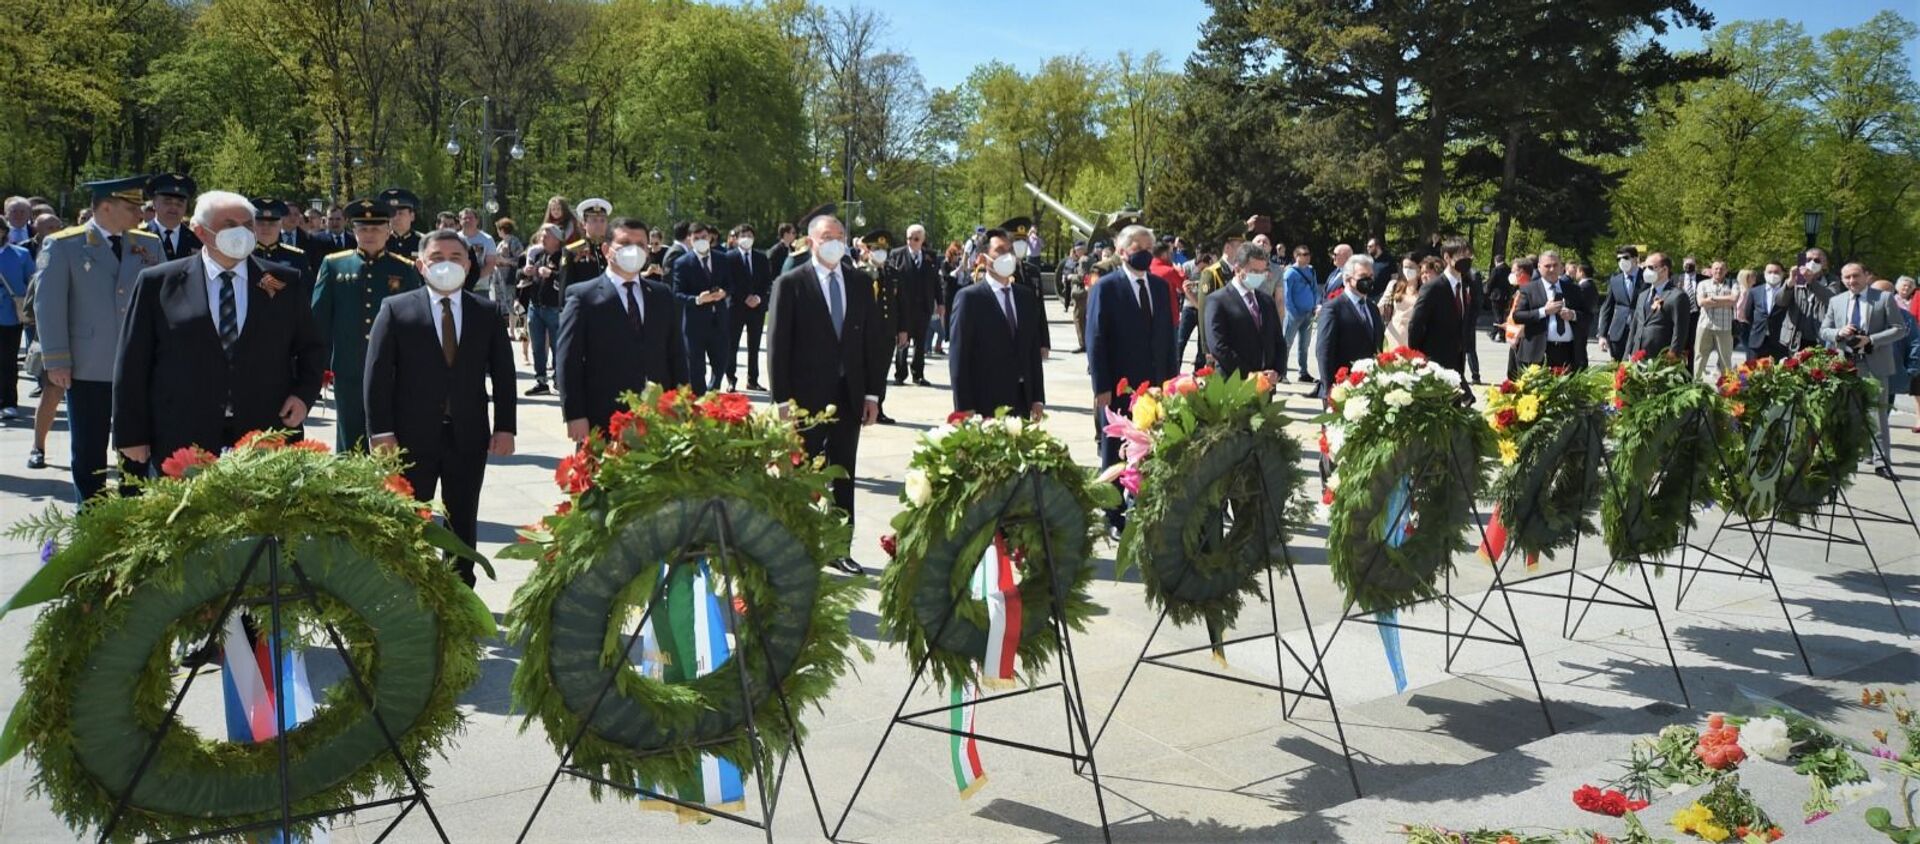 9 мая в Берлине посол Кыргызстана в ФРГ Эрлан Абдылдаев возложил венки к советским воинским мемориалам в Трептов-парке и парке Тиргартен - Sputnik Кыргызстан, 1920, 10.05.2021